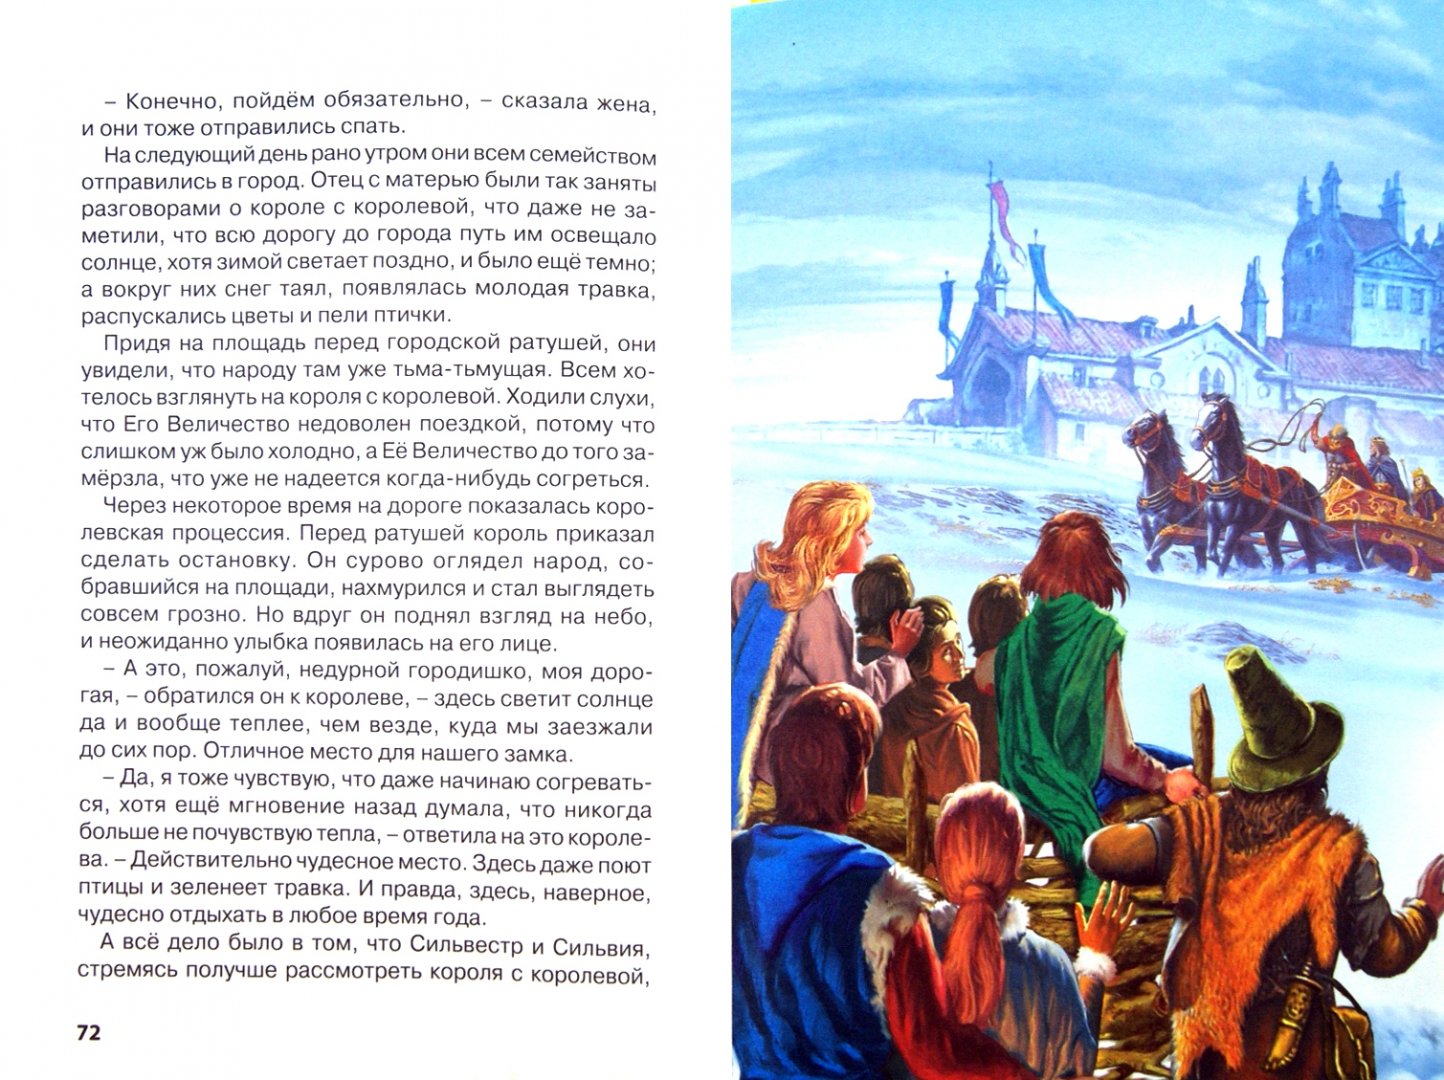 Иллюстрация 1 из 18 для Сказки из волшебной лампы - Топелиус, Гауф, Гримм | Лабиринт - книги. Источник: Лабиринт